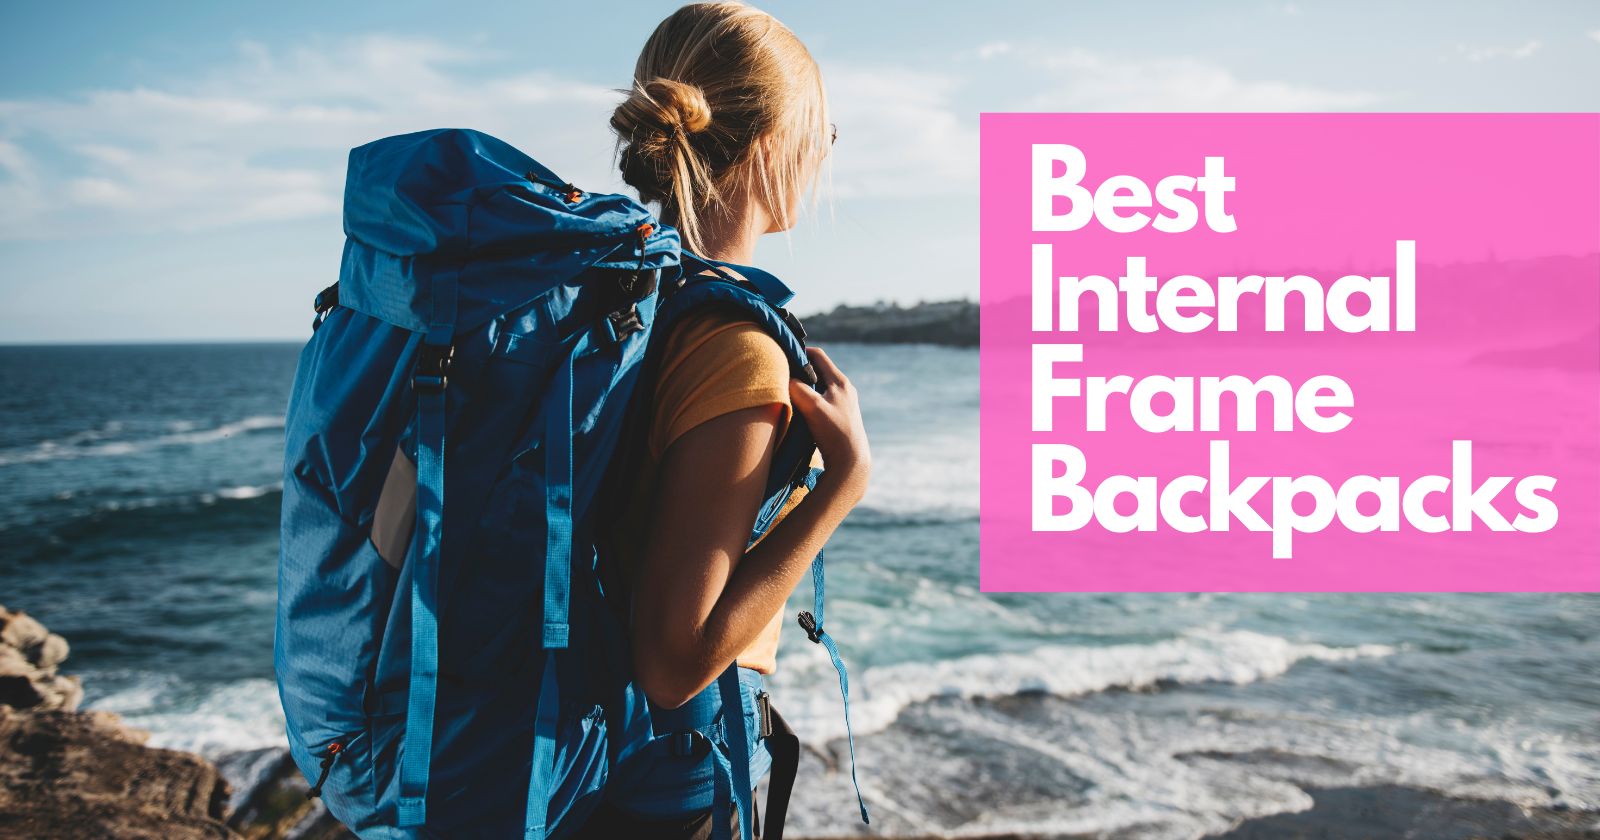 Best Internal Frame Backpacks